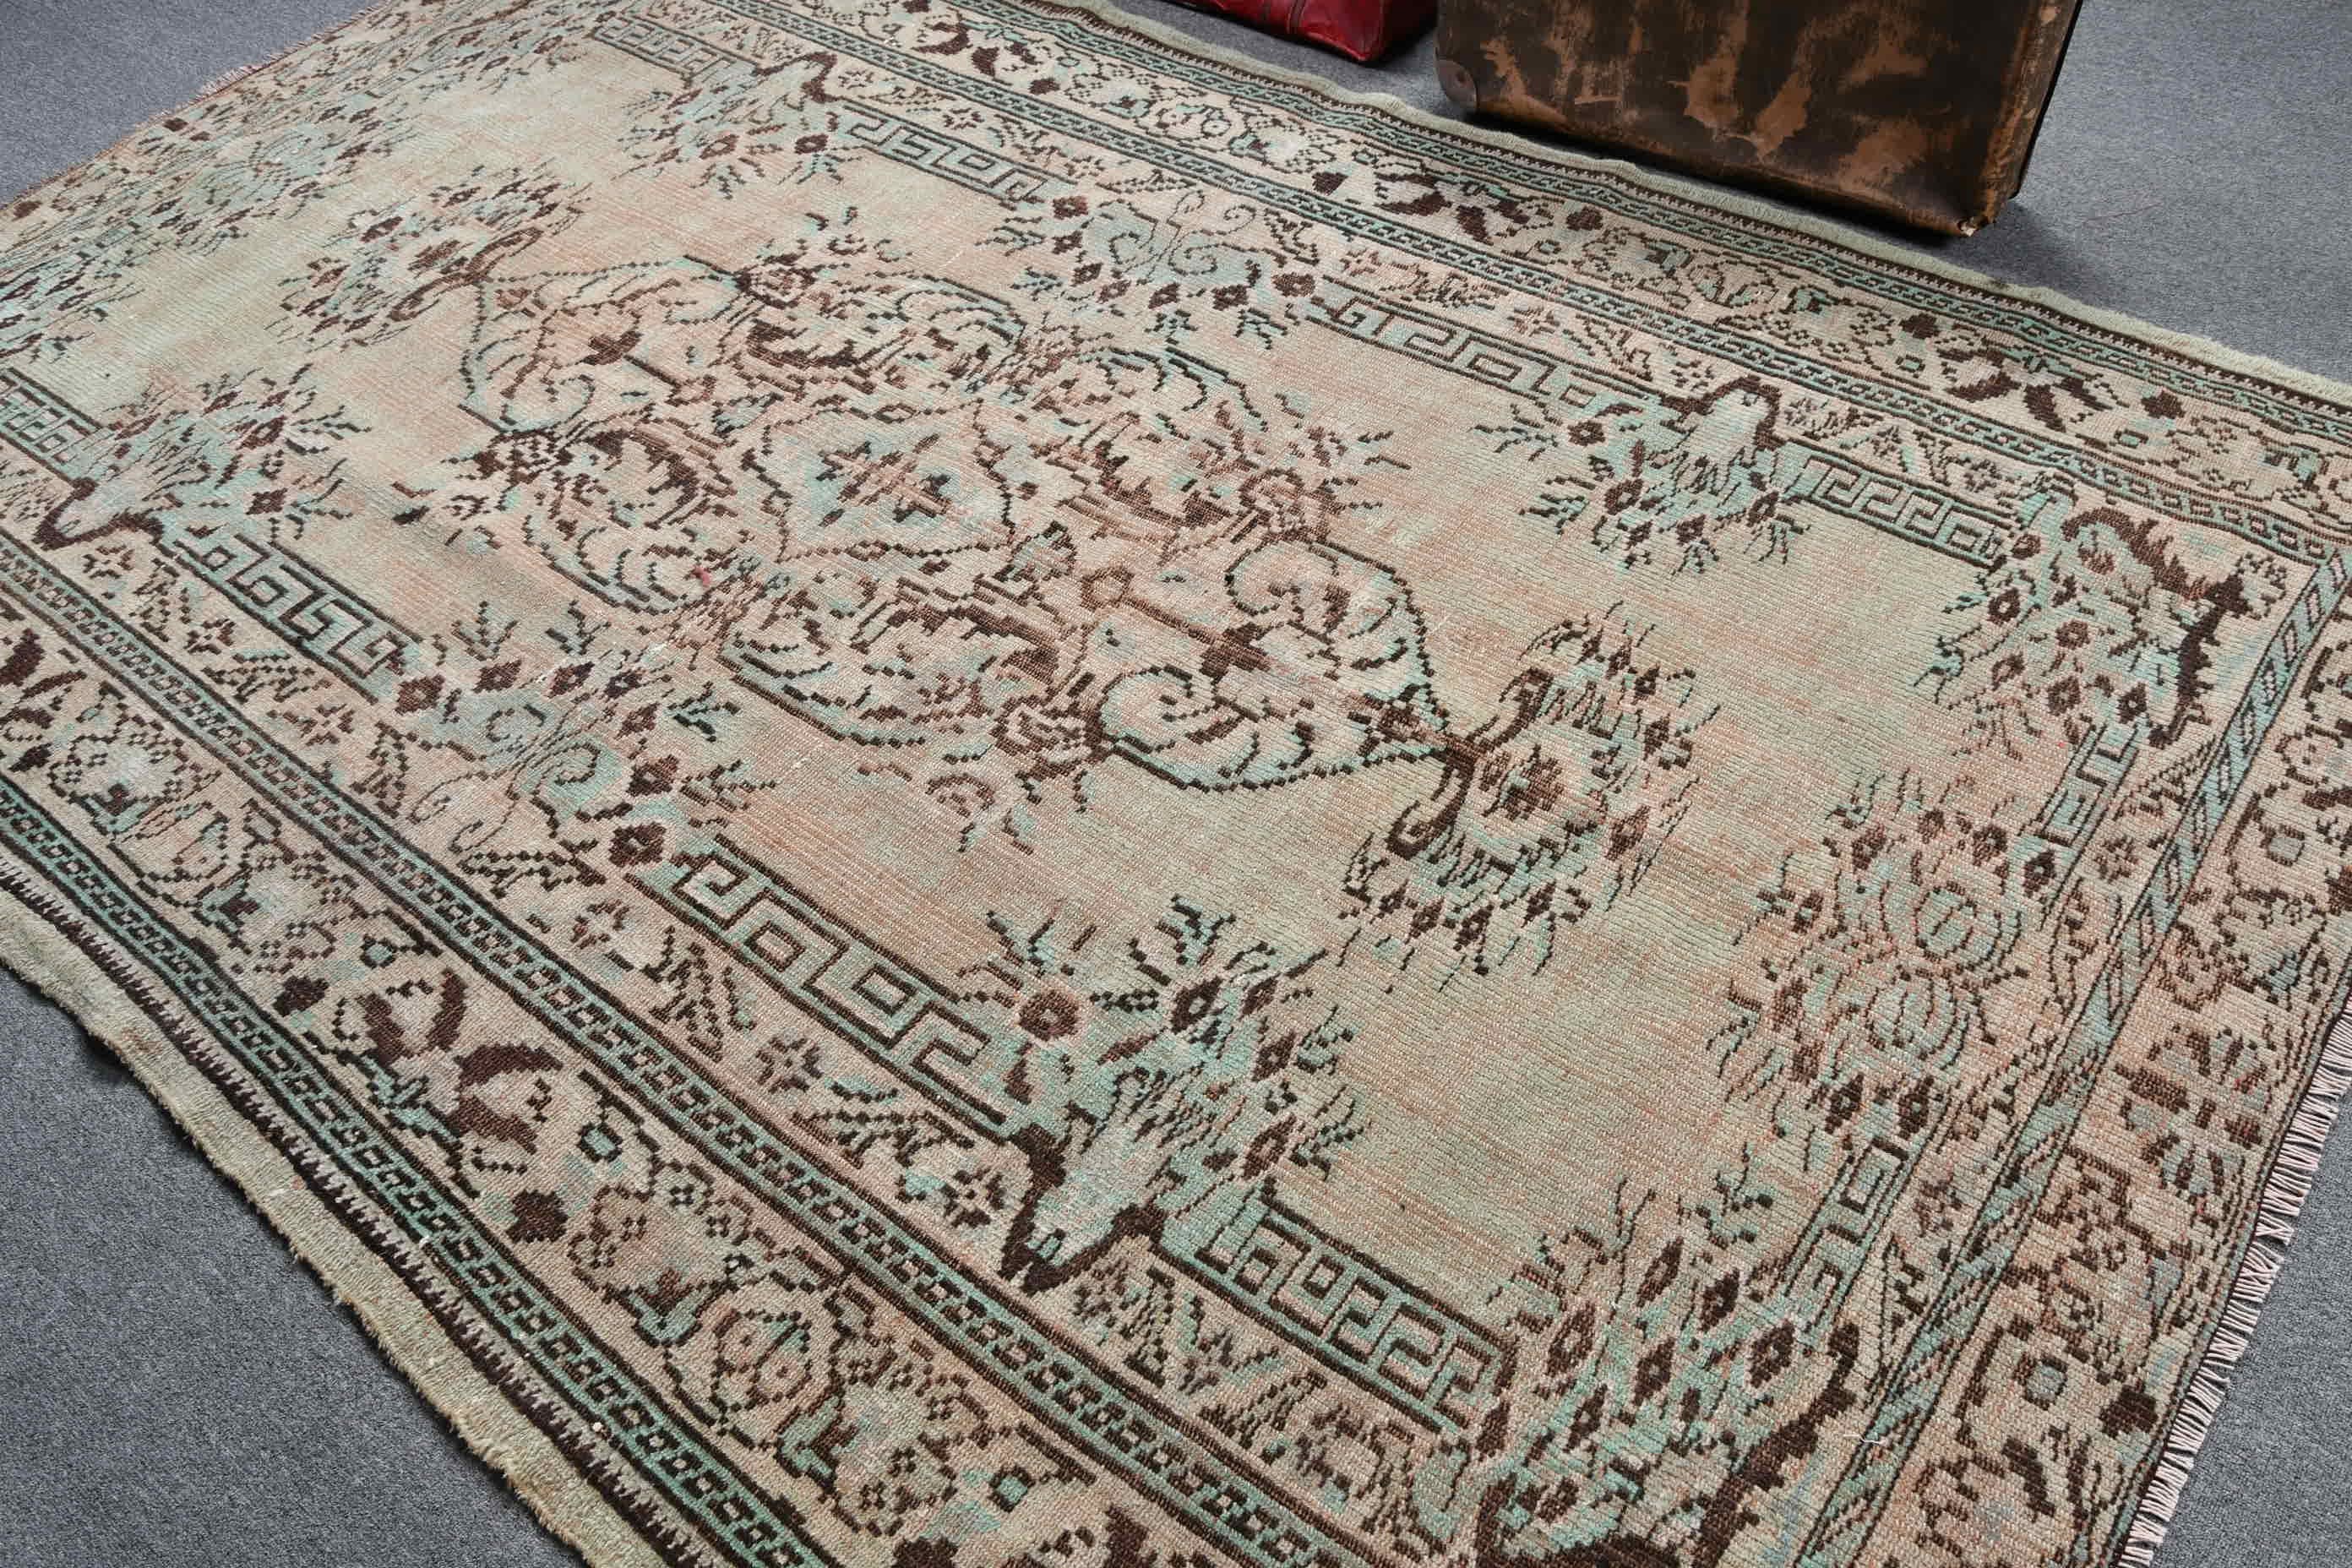 Green Floor Rugs, Living Room Rugs, Turkish Rug, Cute Rugs, Moroccan Rugs, Vintage Rug, Oriental Rug, 6x9.2 ft Large Rug, Dining Room Rugs